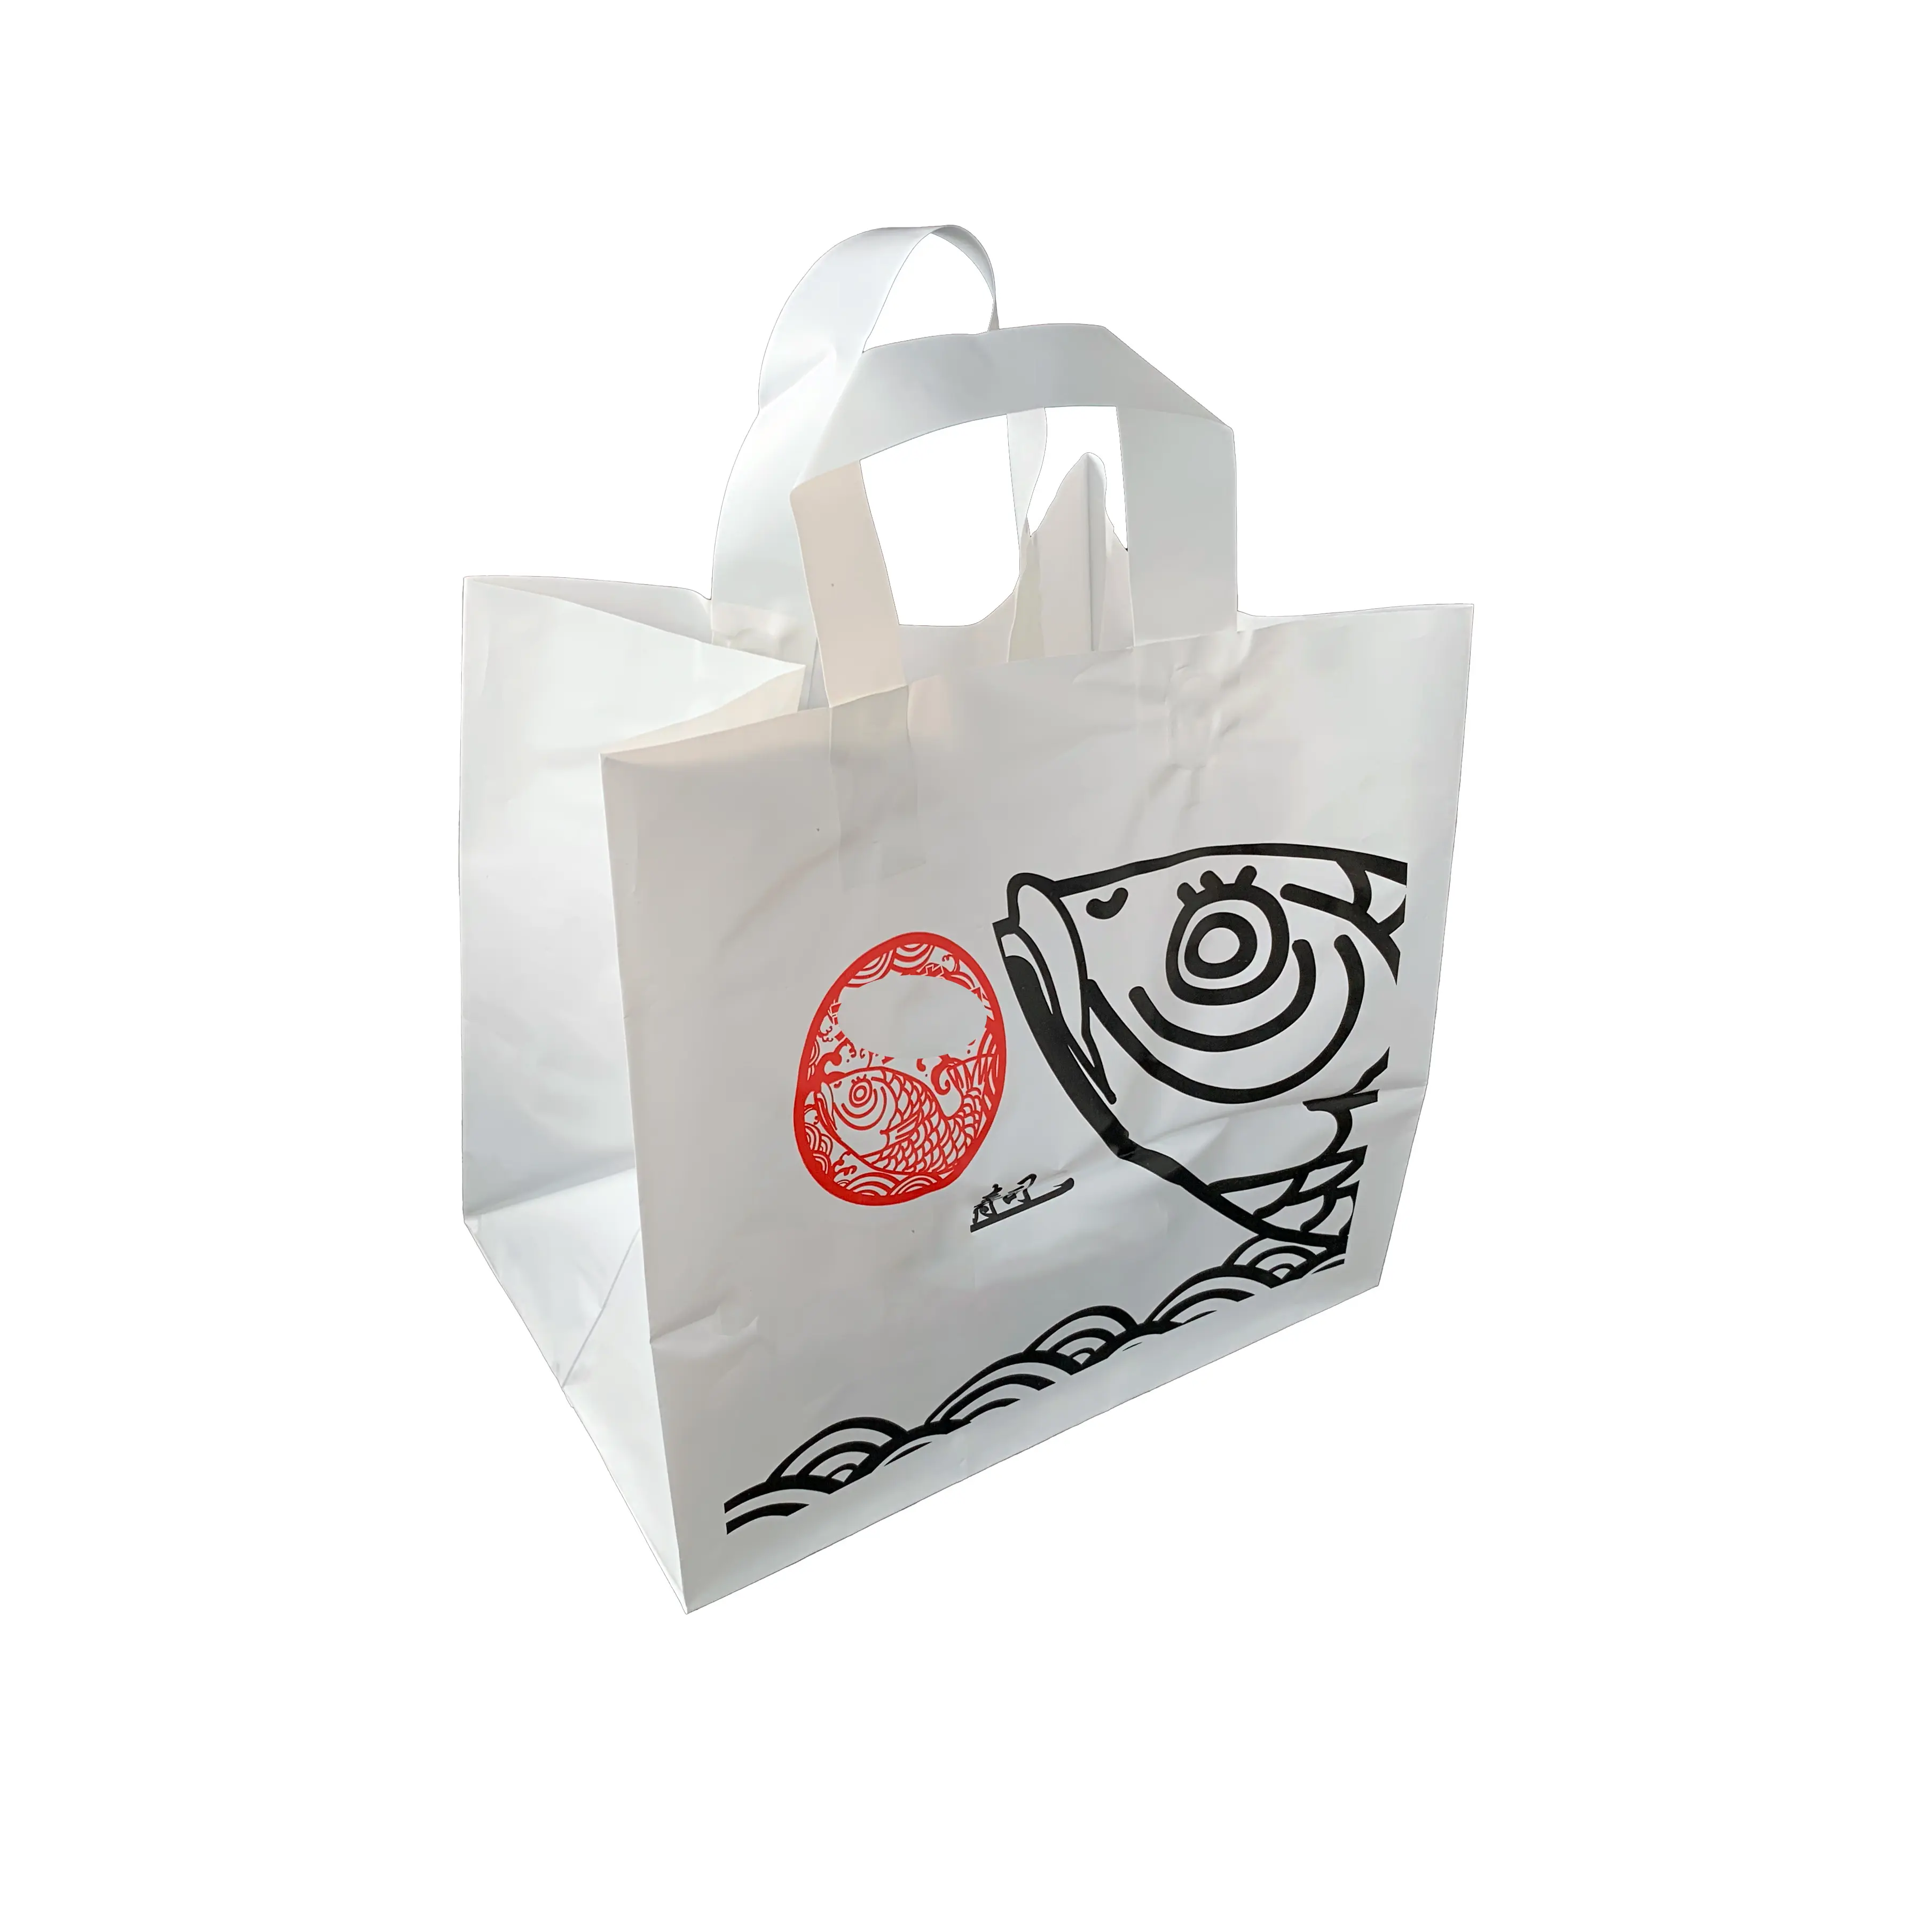 कस्टम लोगो के साथ पाले सेओढ़ लिया प्लास्टिक के शॉपिंग बैग के साथ शॉपिंग बैग संभाल रेस्तरां मुलायम पाश के साथ takeaway बैग ले जाने